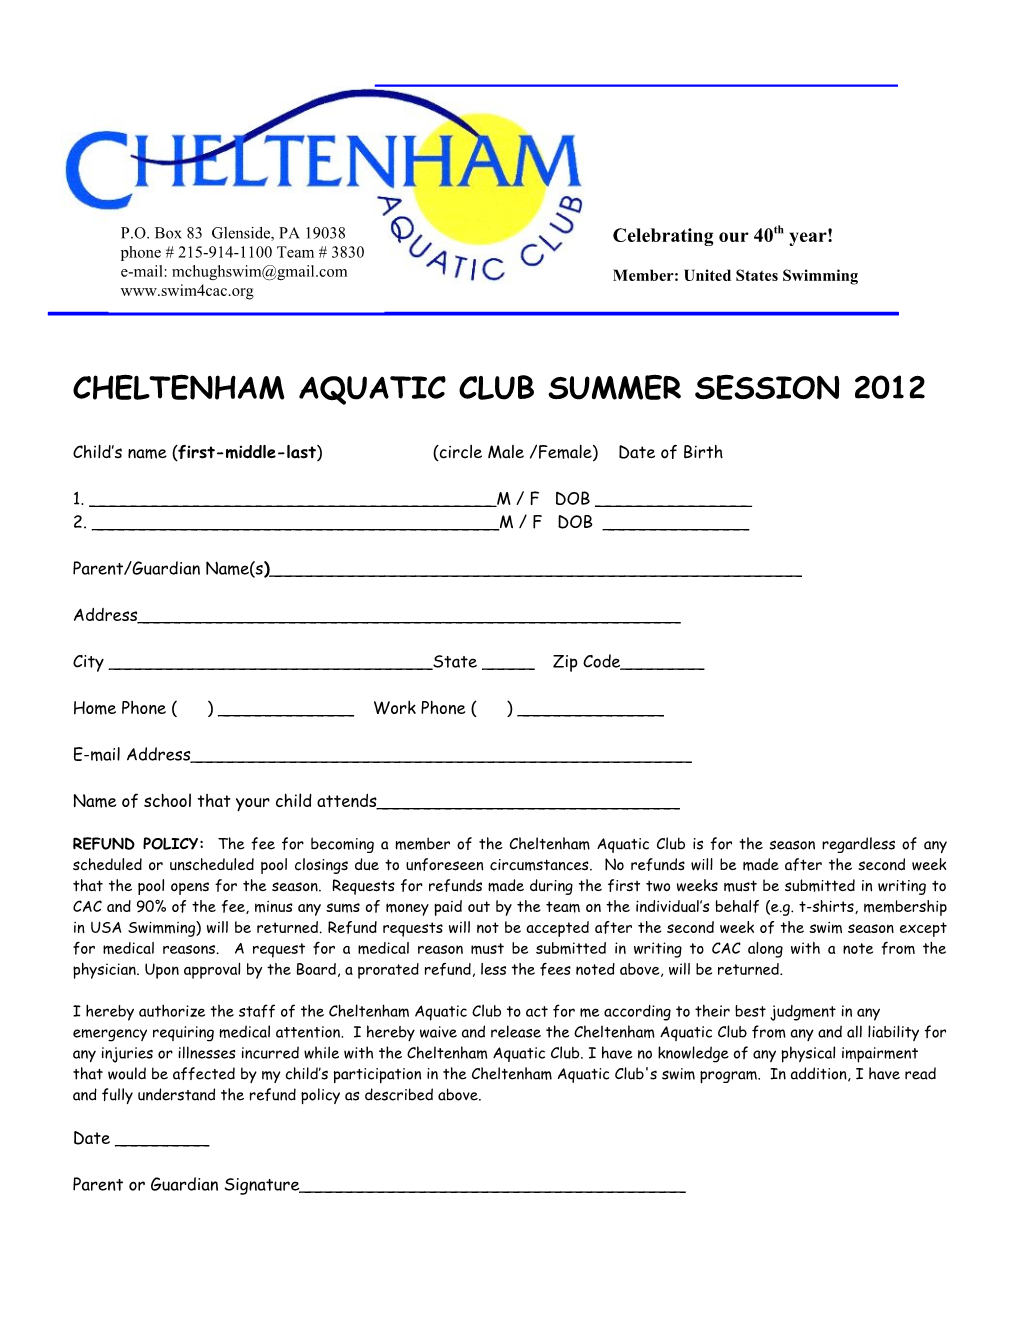 Cheltenham Aquatic Club Summer Session 2012